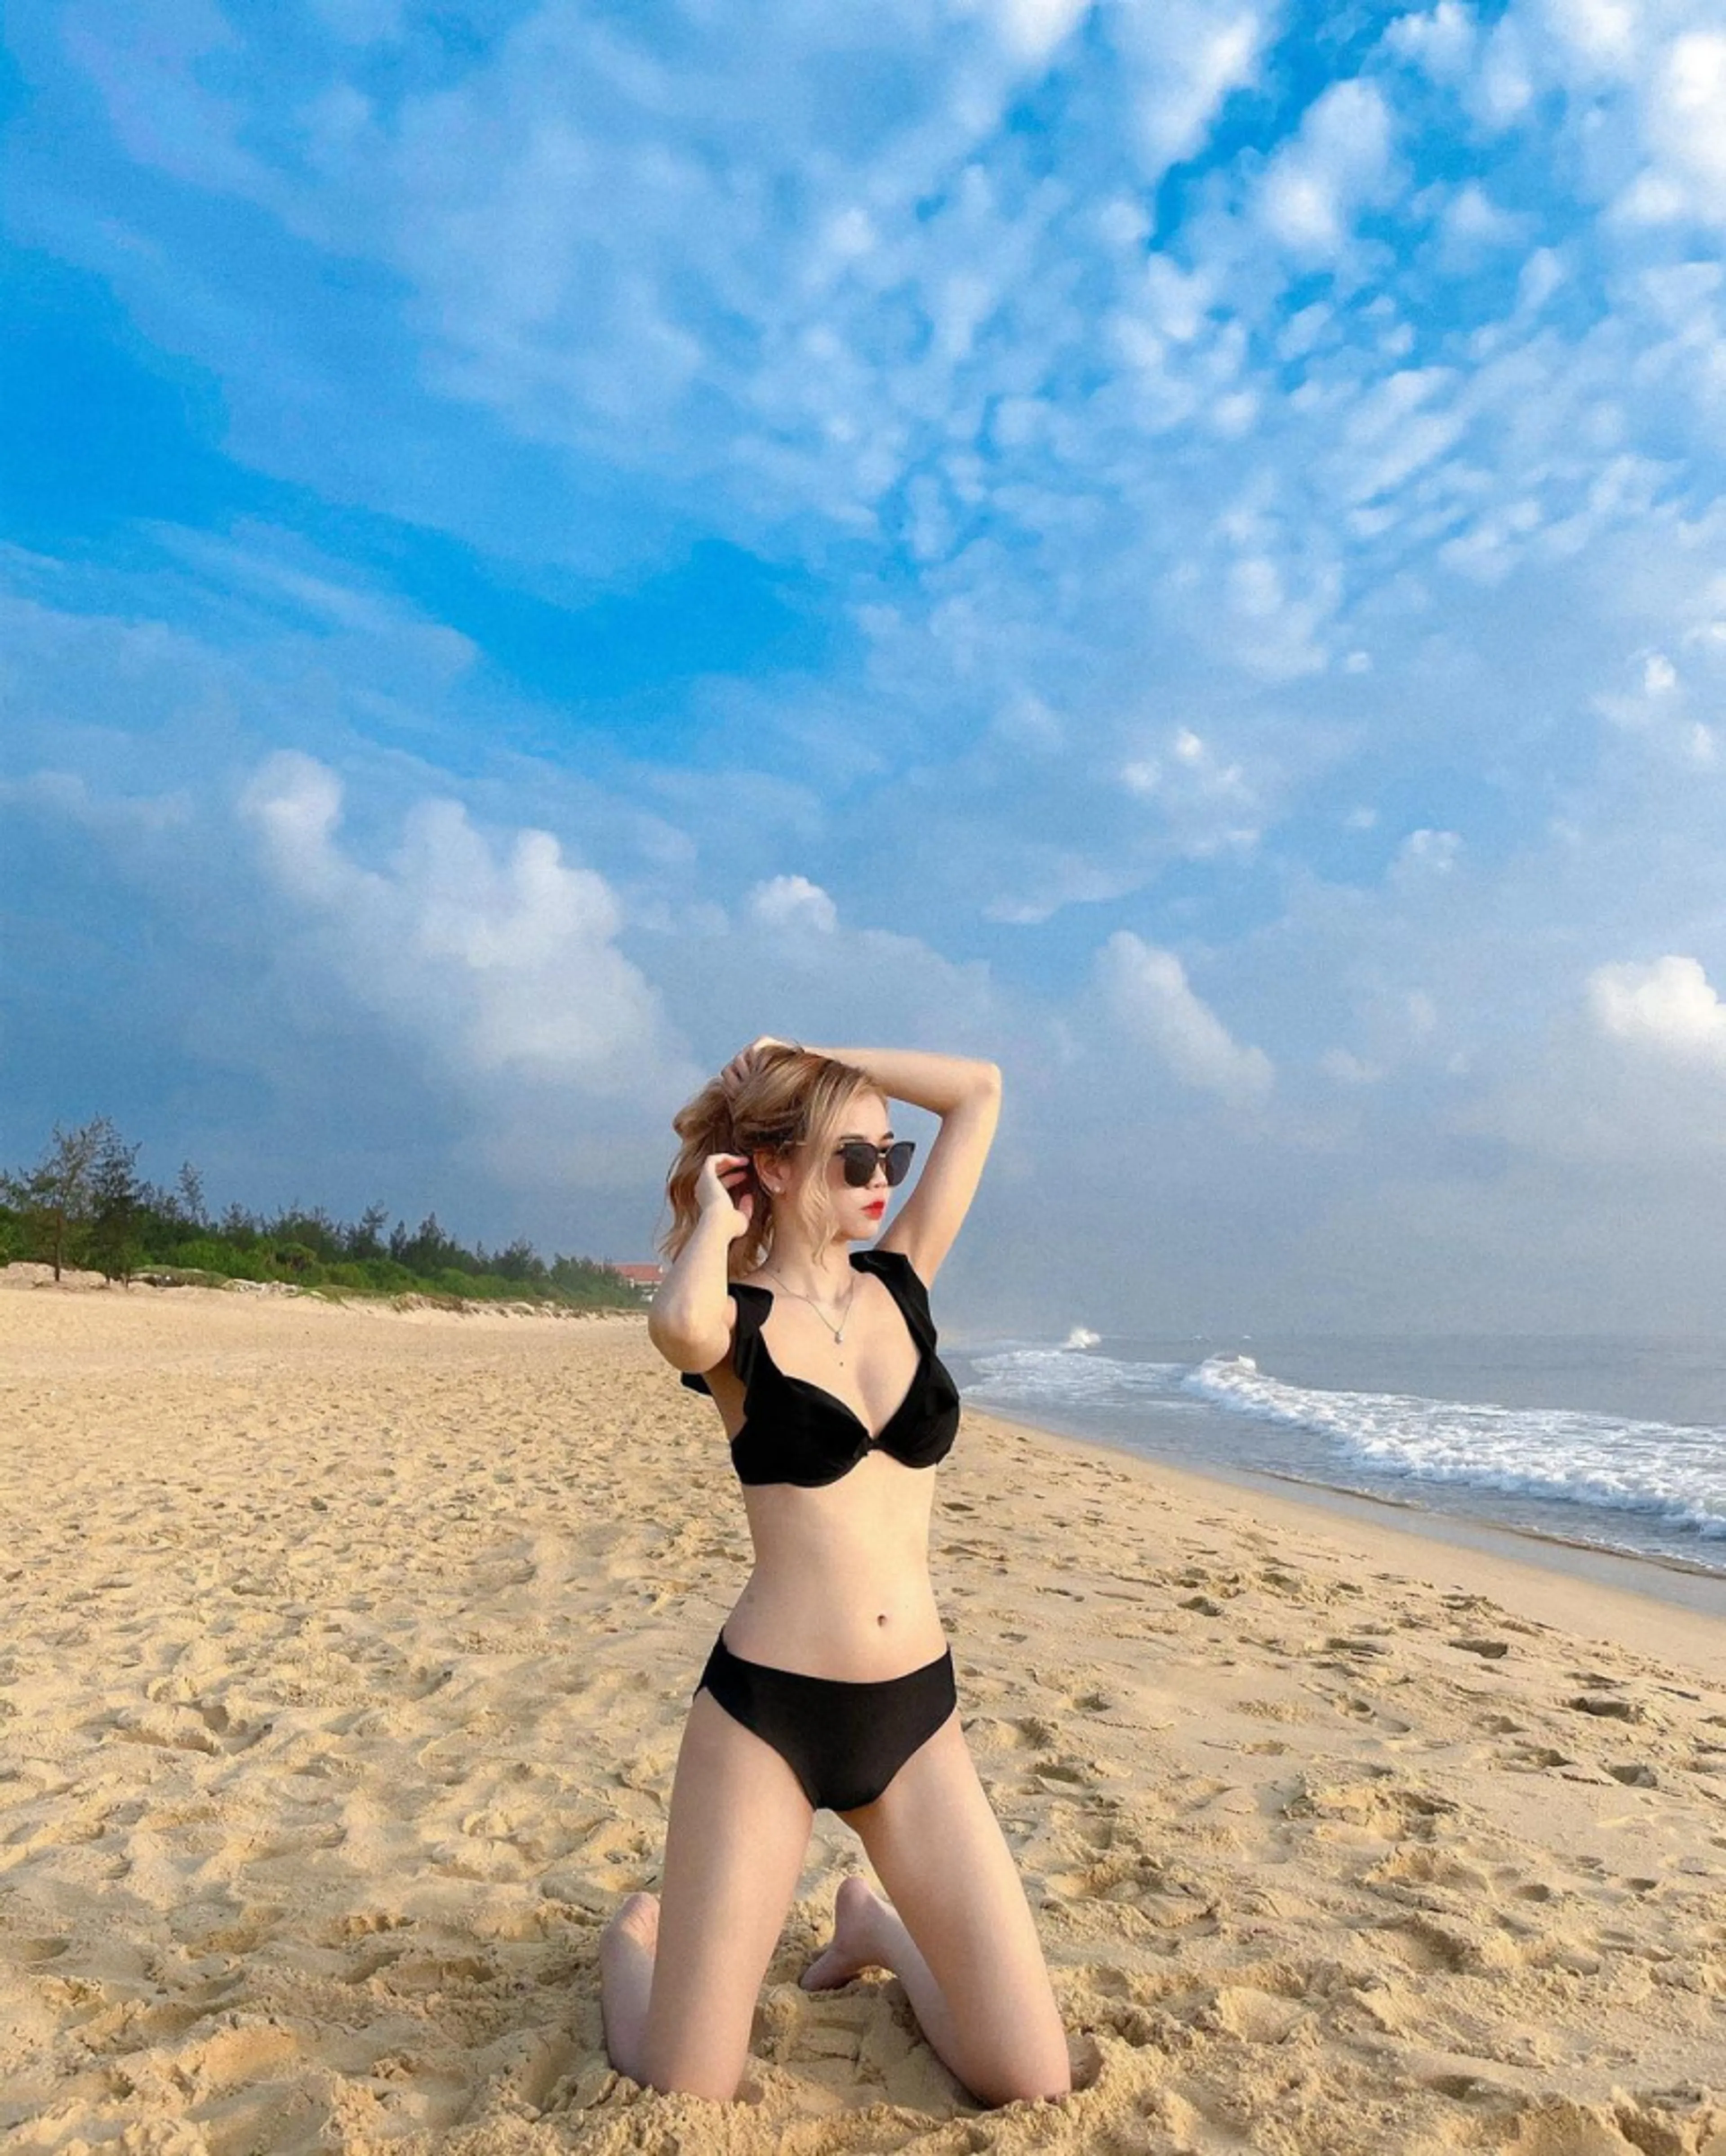 Biển Bảo Ninh - Bãi biển hoang sơ đẹp bậc nhất Quảng Bình